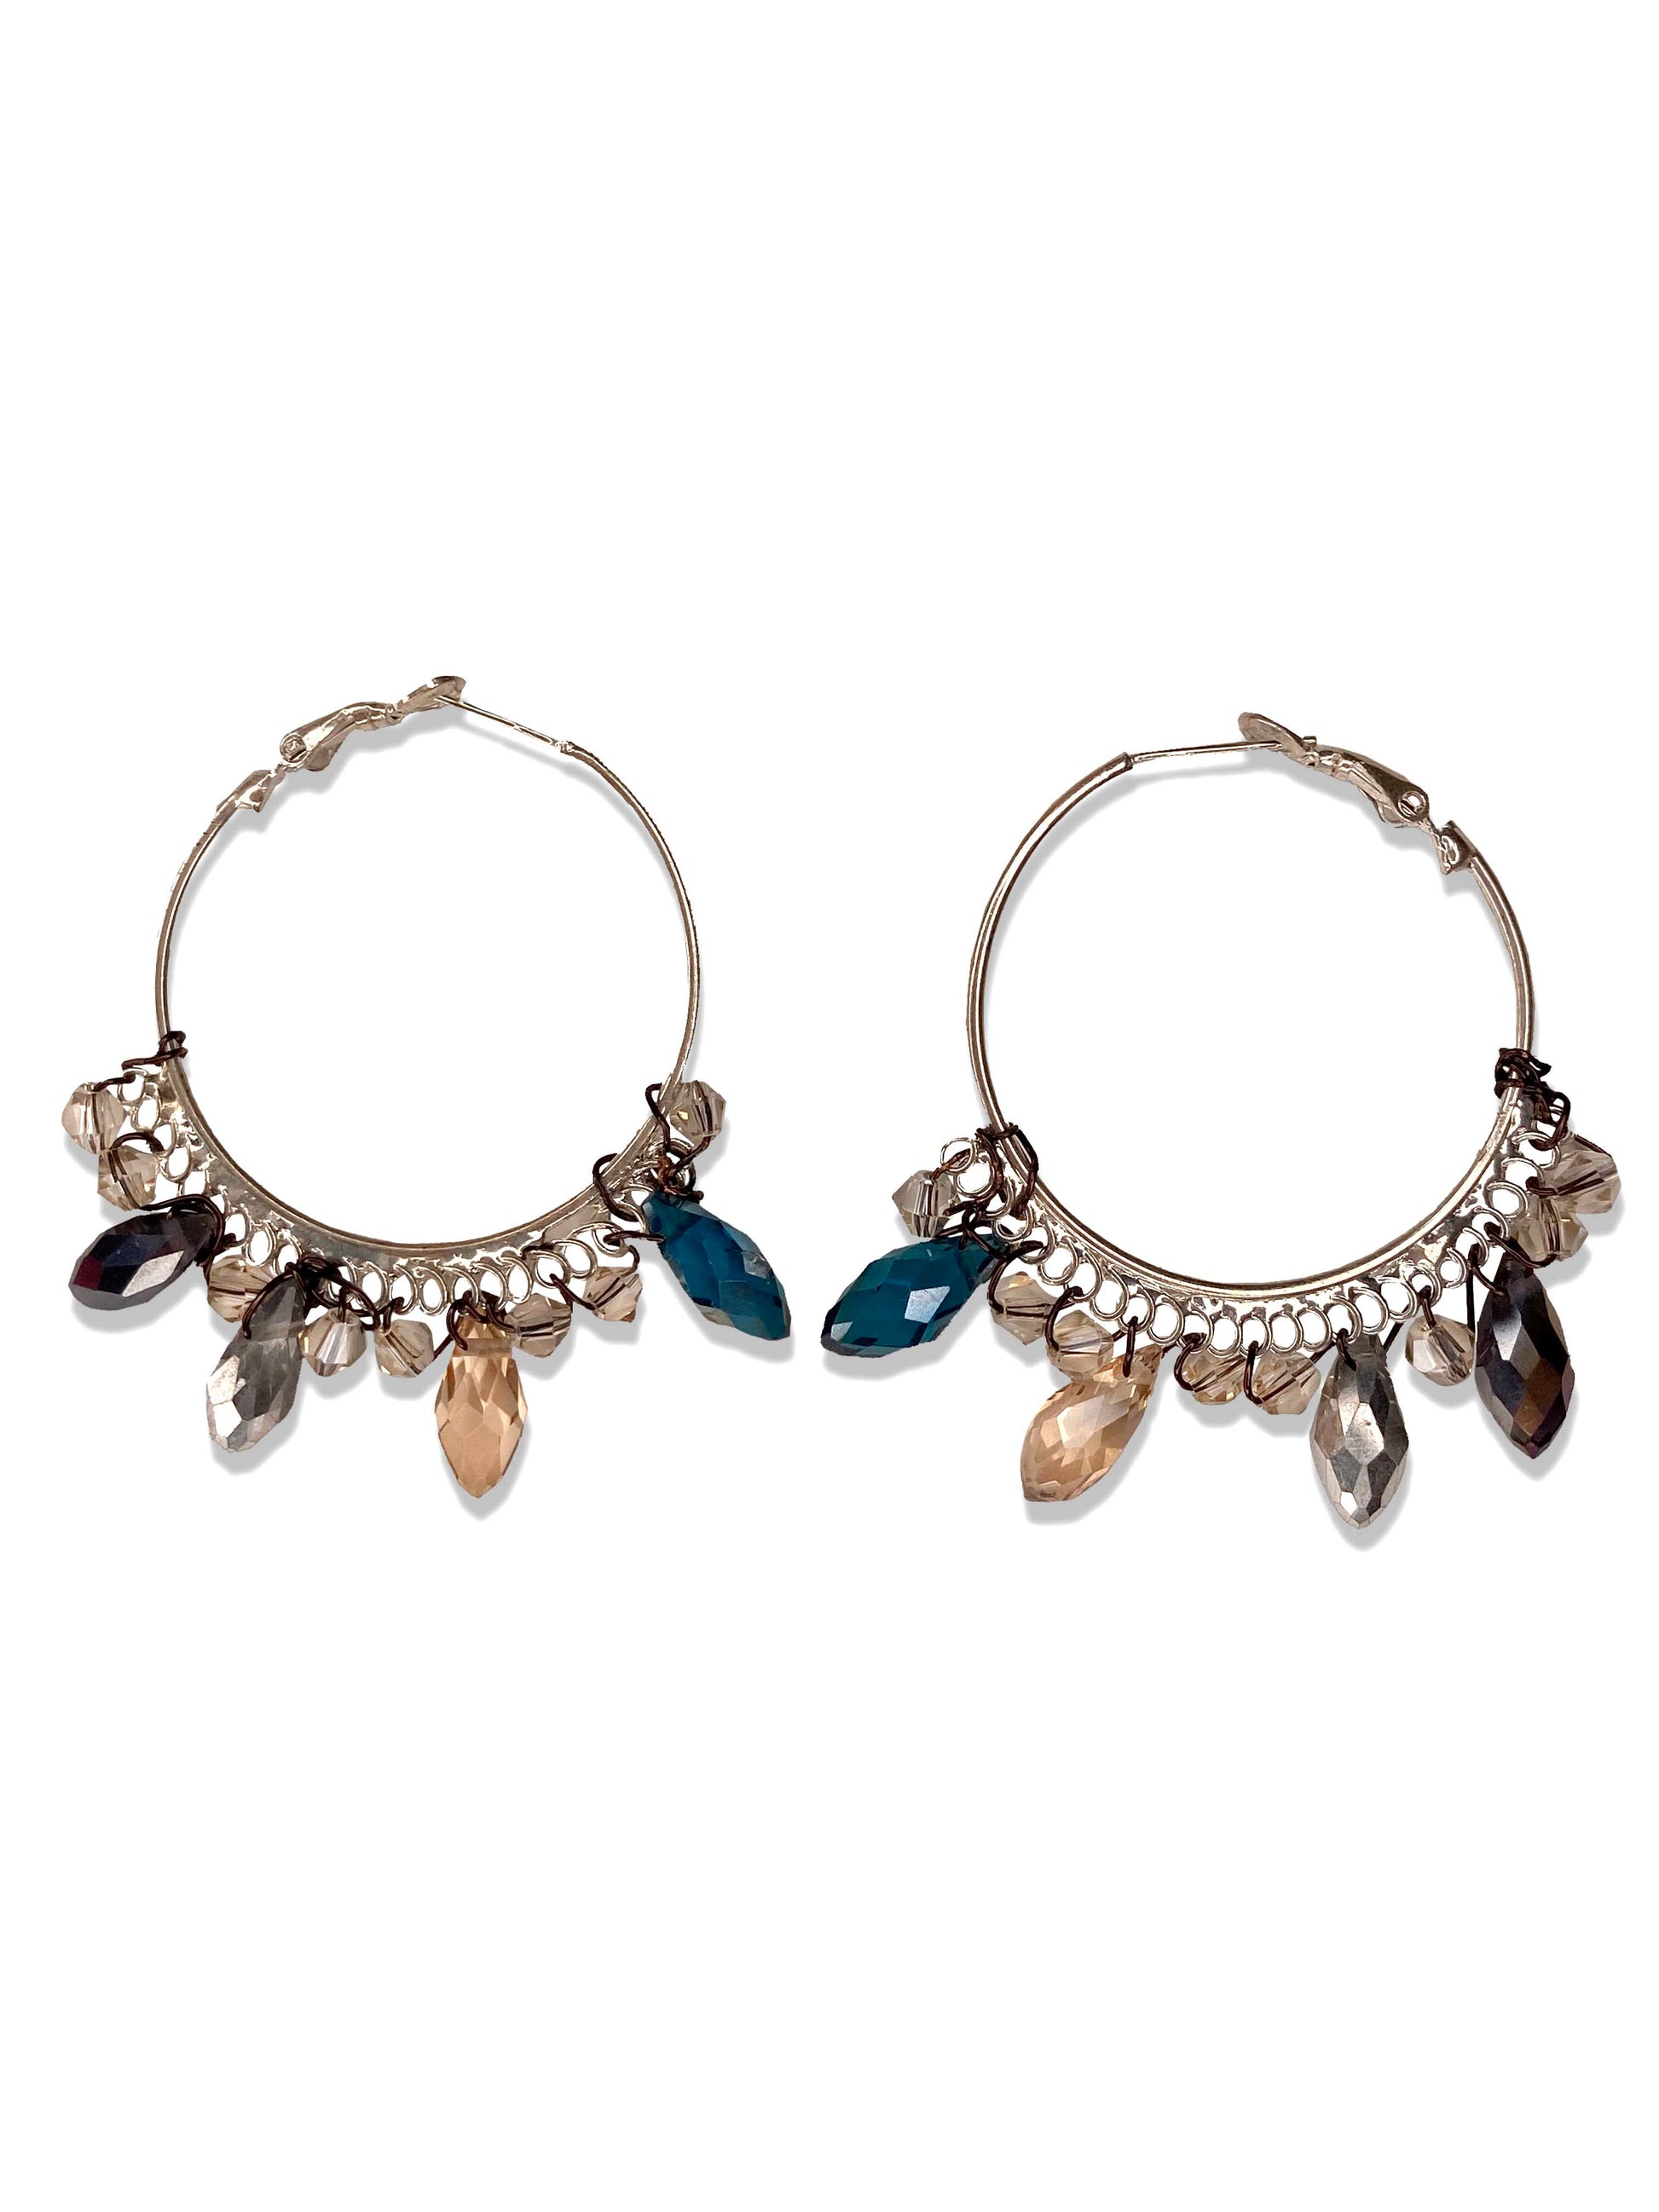 Handmade blue and clear crystal beaded hoop earrings.